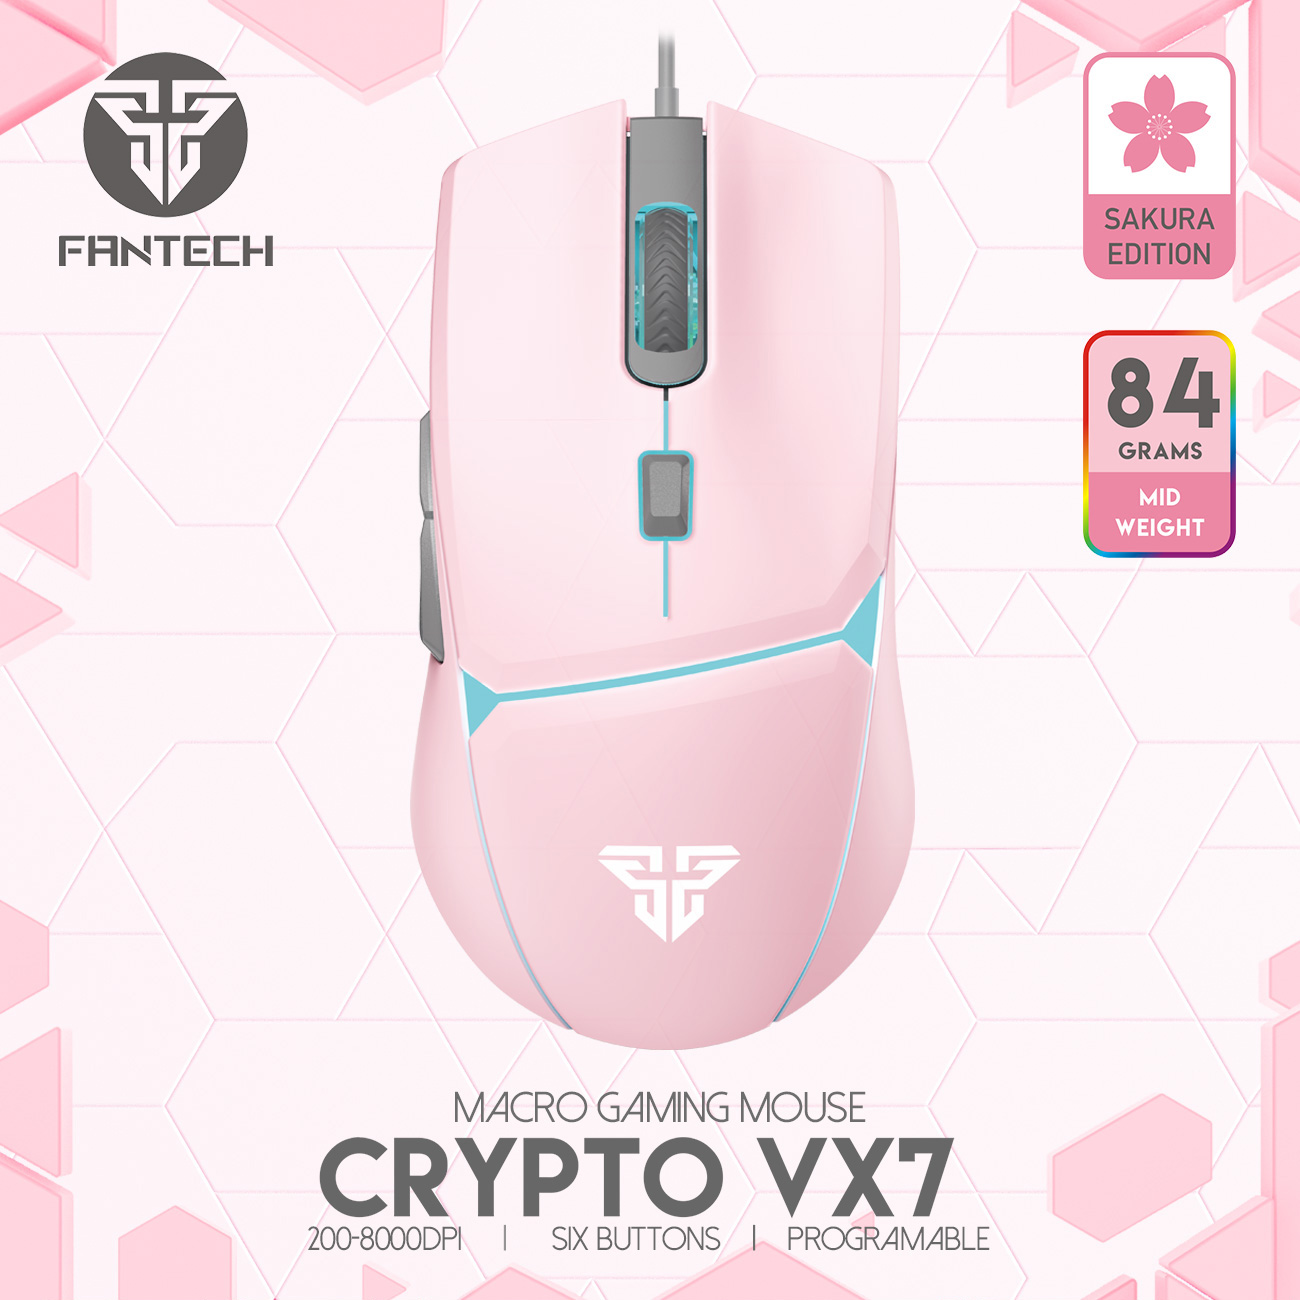 FANTECH VX7 CRYPTO Macro Key Gaming Mouse  รุ่น VX7 เมาส์เกมมิ่ง แฟนเทค ความแม่นยำปรับ DPI 200-8000 ปรับ มาโคร ได้ถึง 6 ปุ่ม  เหมาะกับเกมส์ MMORP